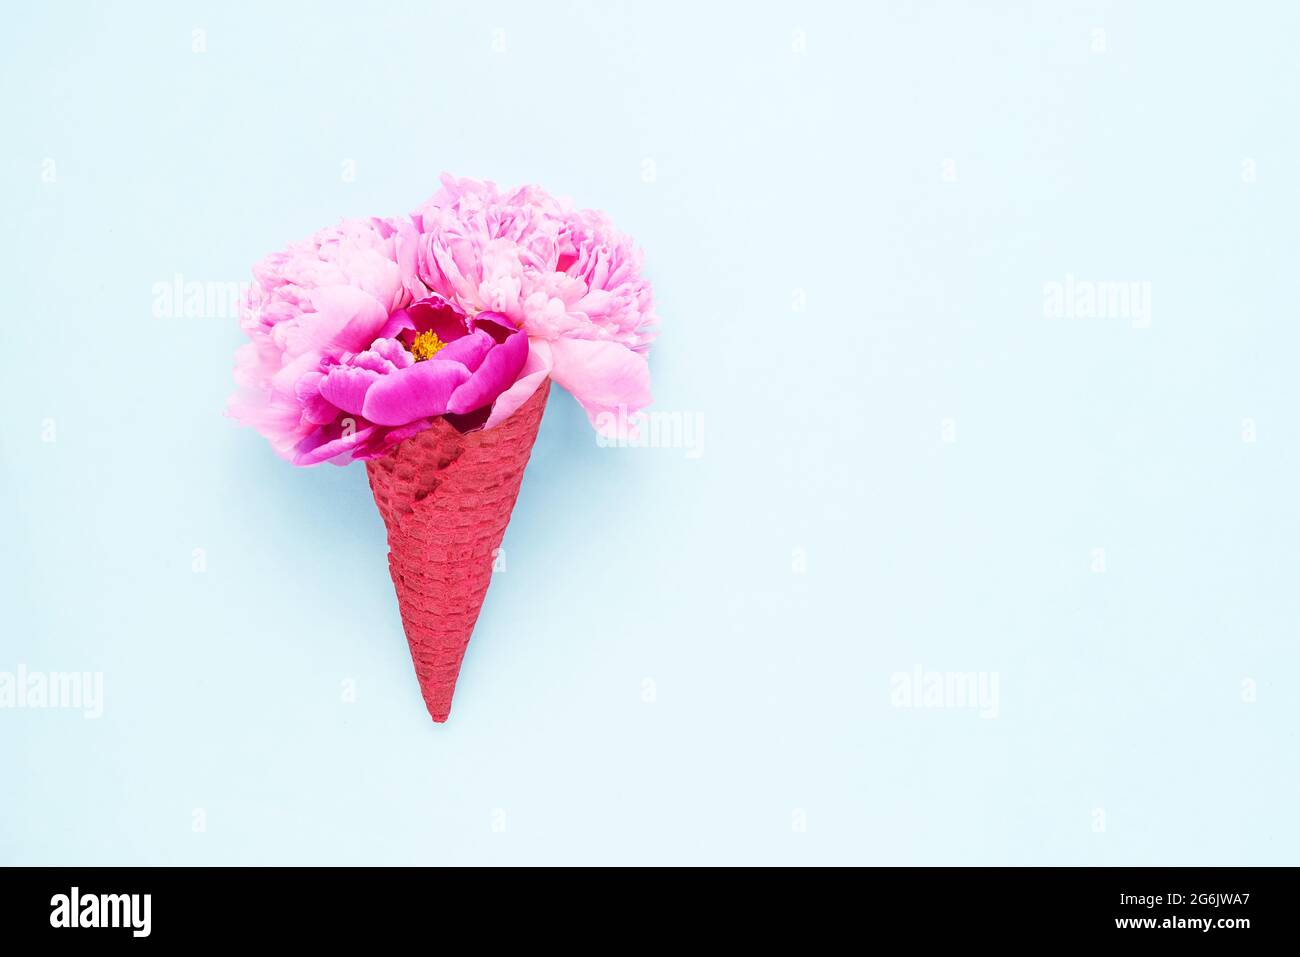 Pinke Pfingstrosen-Blüten in einem roten Waffel-Eiscreme-Kegel auf hellblauem Hintergrund. Muttertag, Valentinstag, Bachelorette, Sommerkonzept. Platz kopieren, t Stockfoto